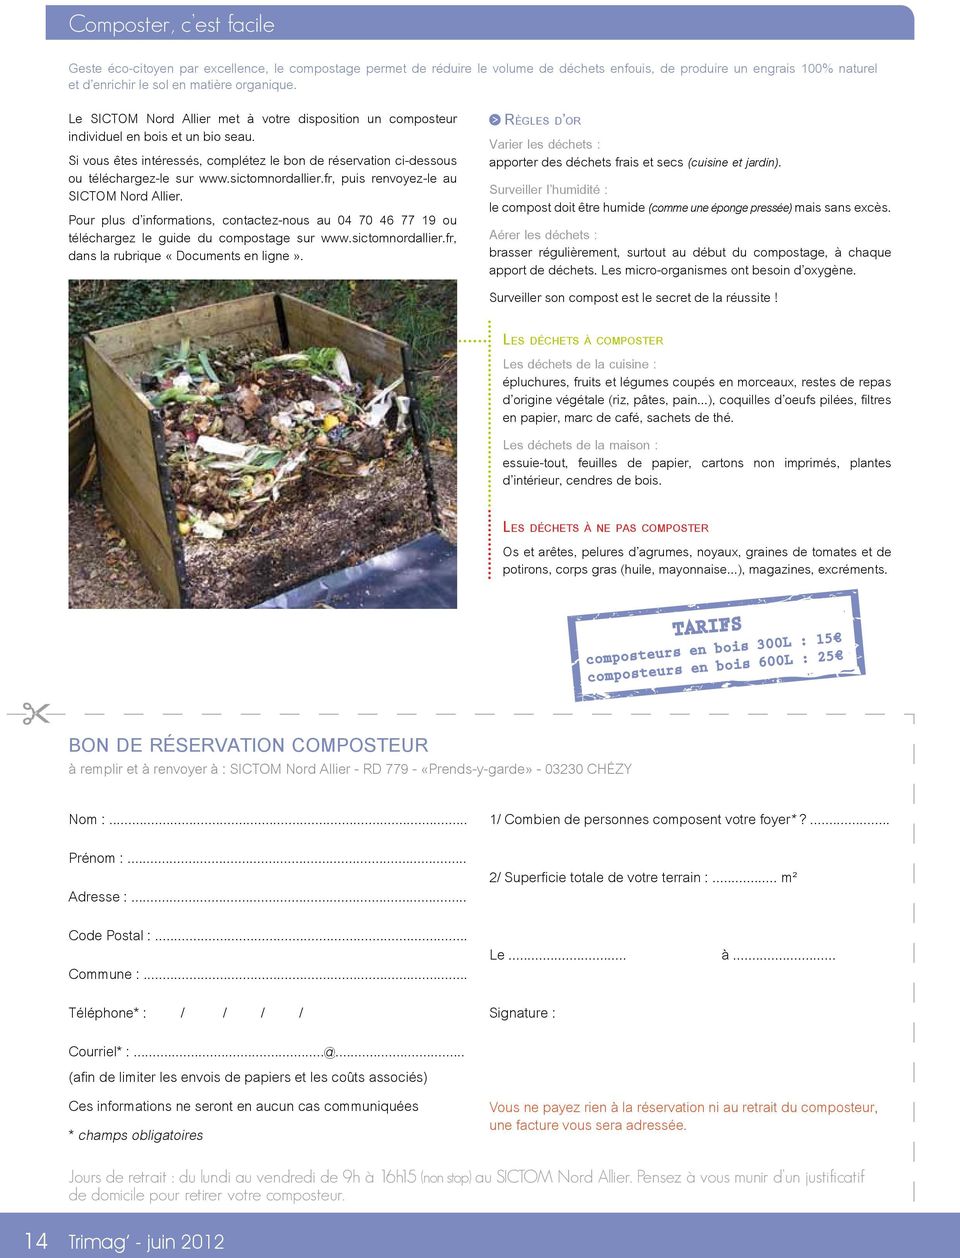 sictomnordallier.fr, puis renvoyez-le au SICTOM Nord Allier. Pour plus d informations, contactez-nous au 04 70 46 77 19 ou téléchargez le guide du compostage sur www.sictomnordallier.fr, dans la rubrique «Documents en ligne».